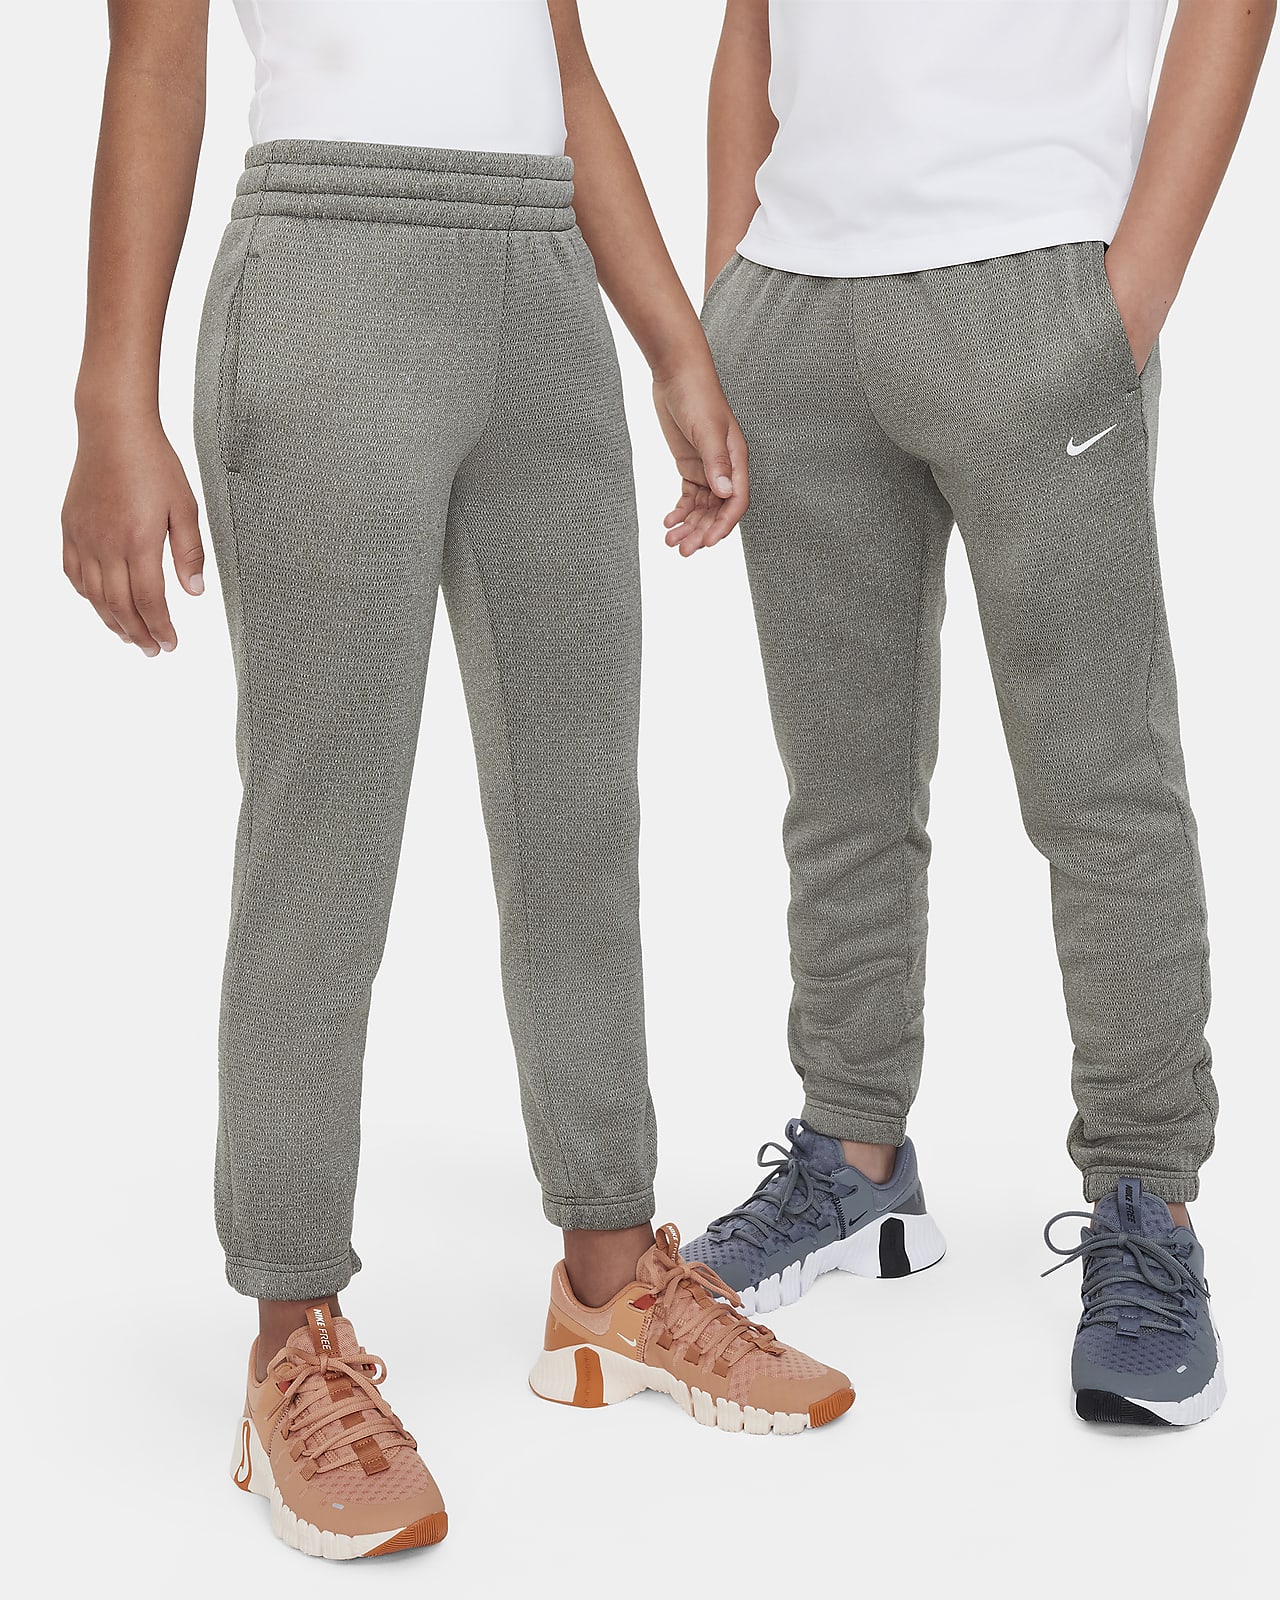 Pantaloni per l'inverno Nike Therma-FIT – Ragazzo/a